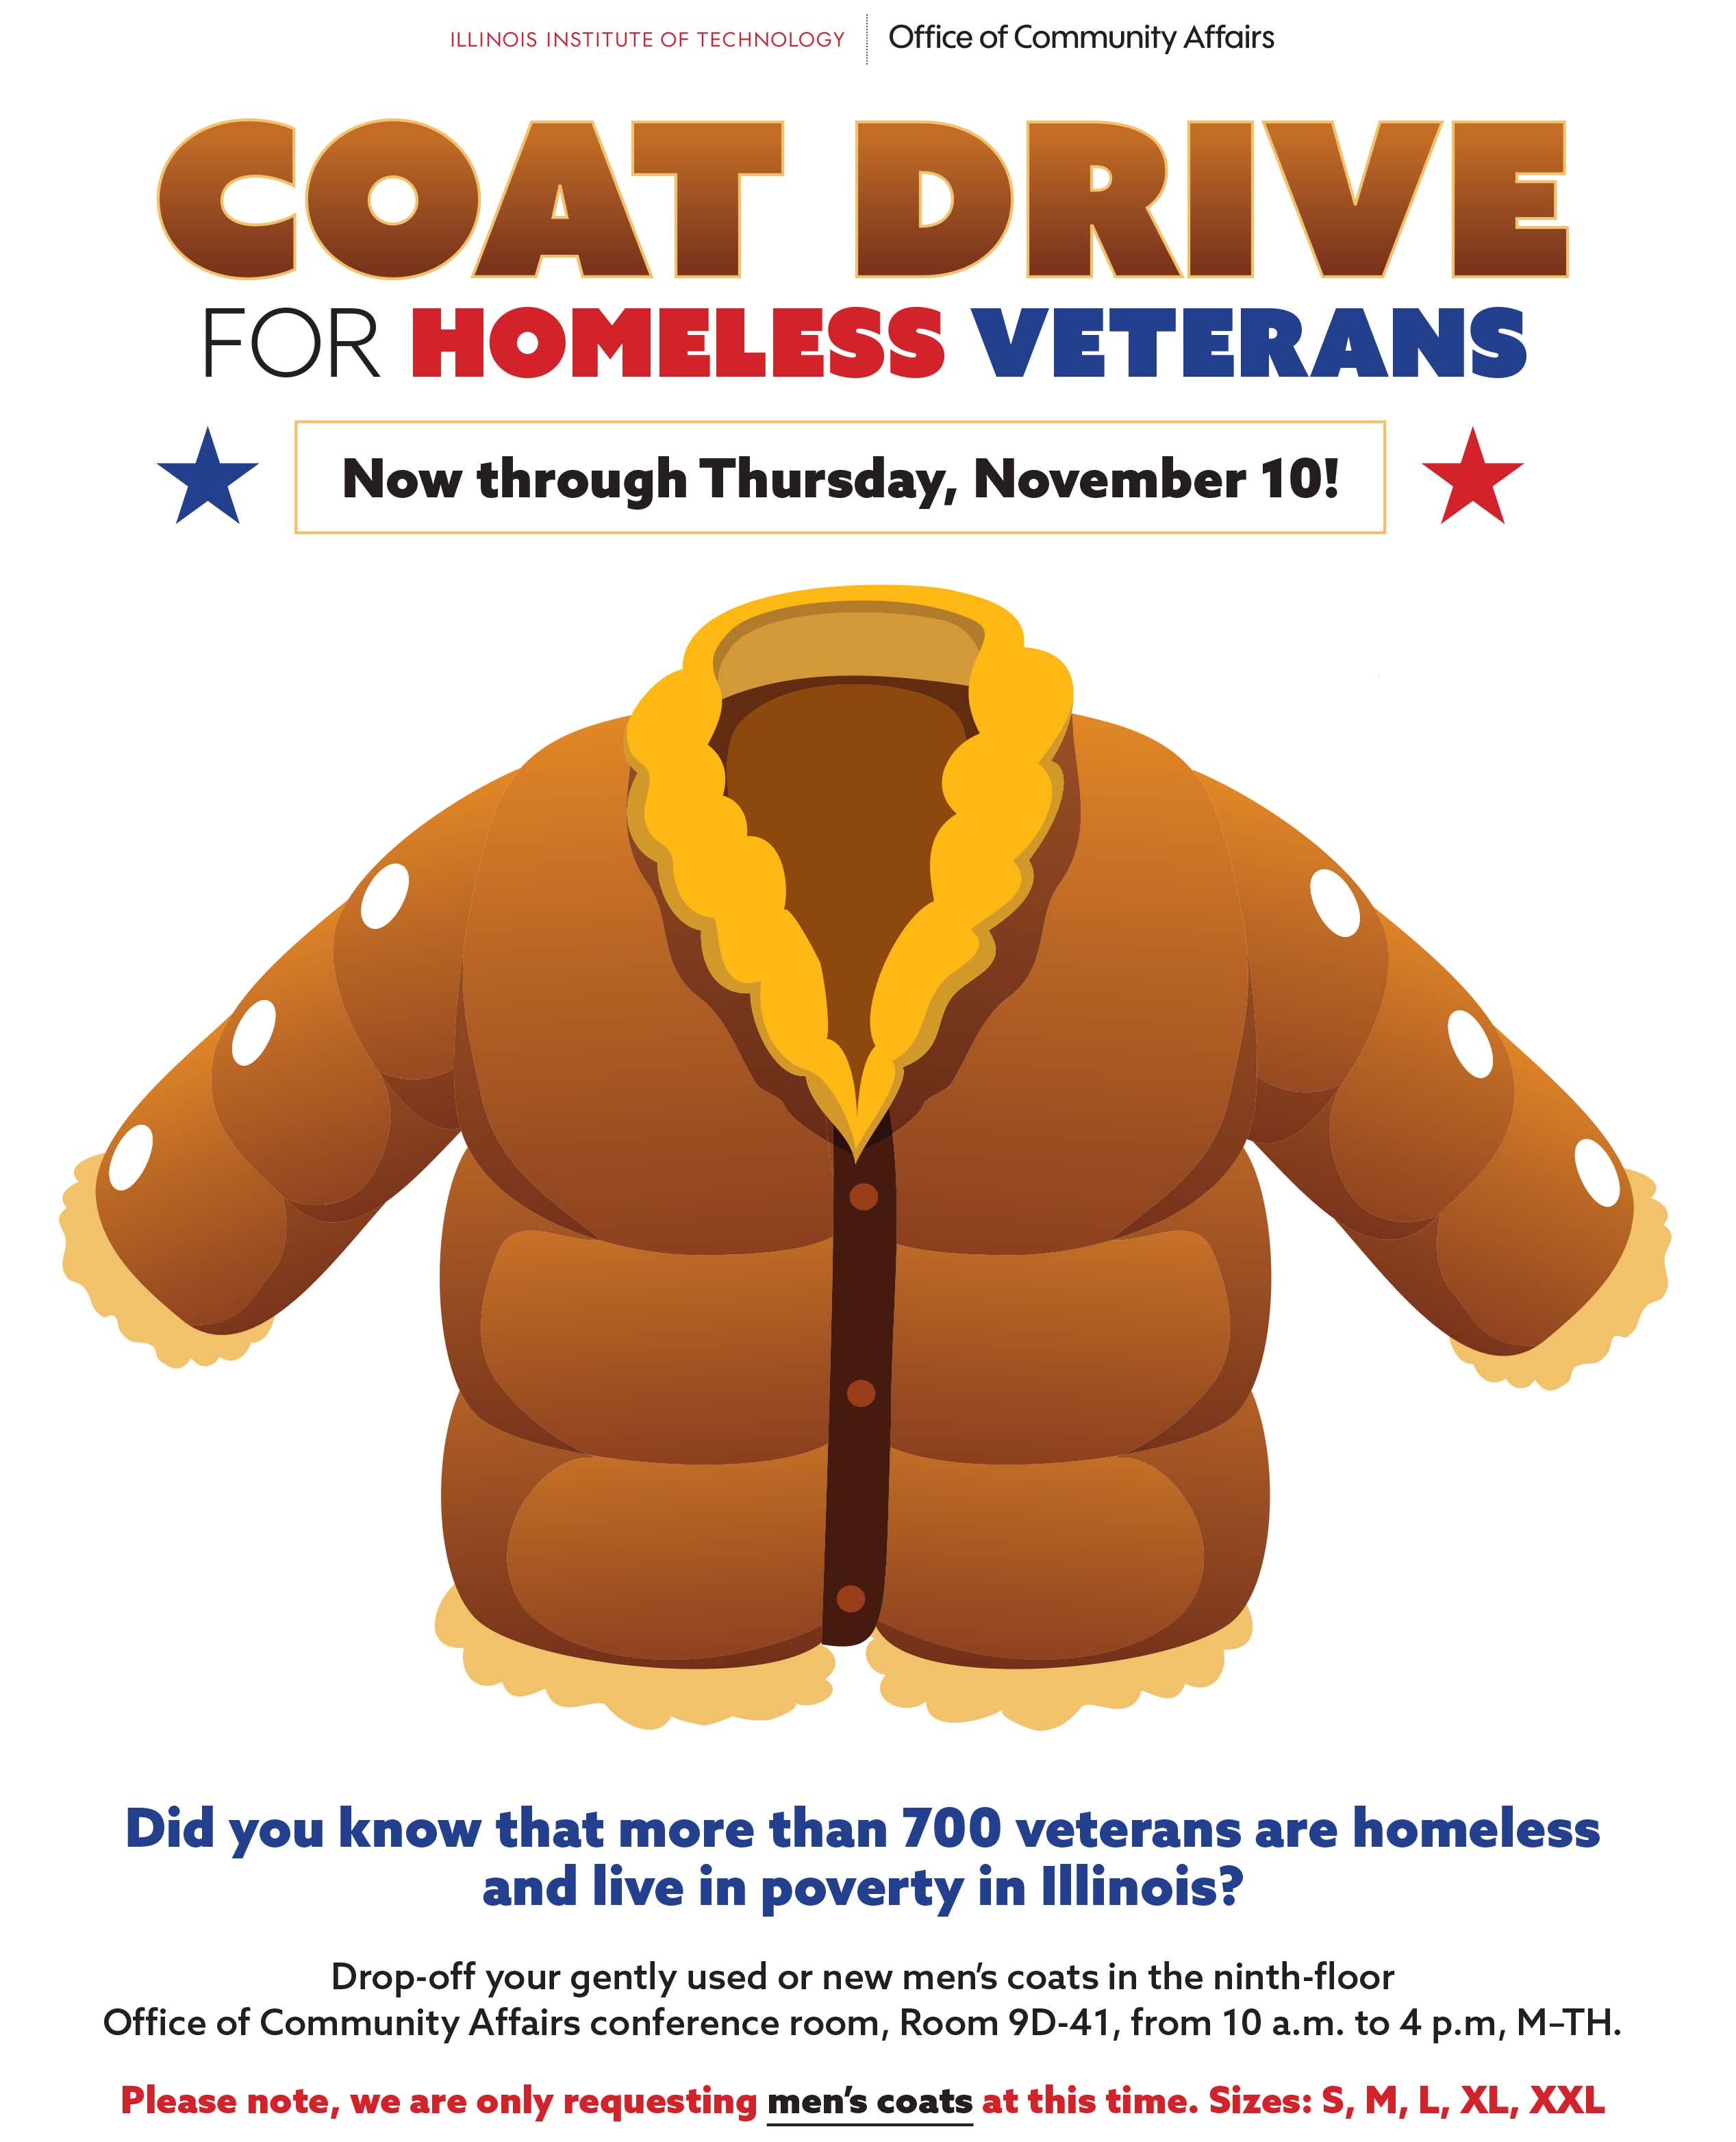 Coat Drive for Homeless Veterans Illinois Institute of Technology